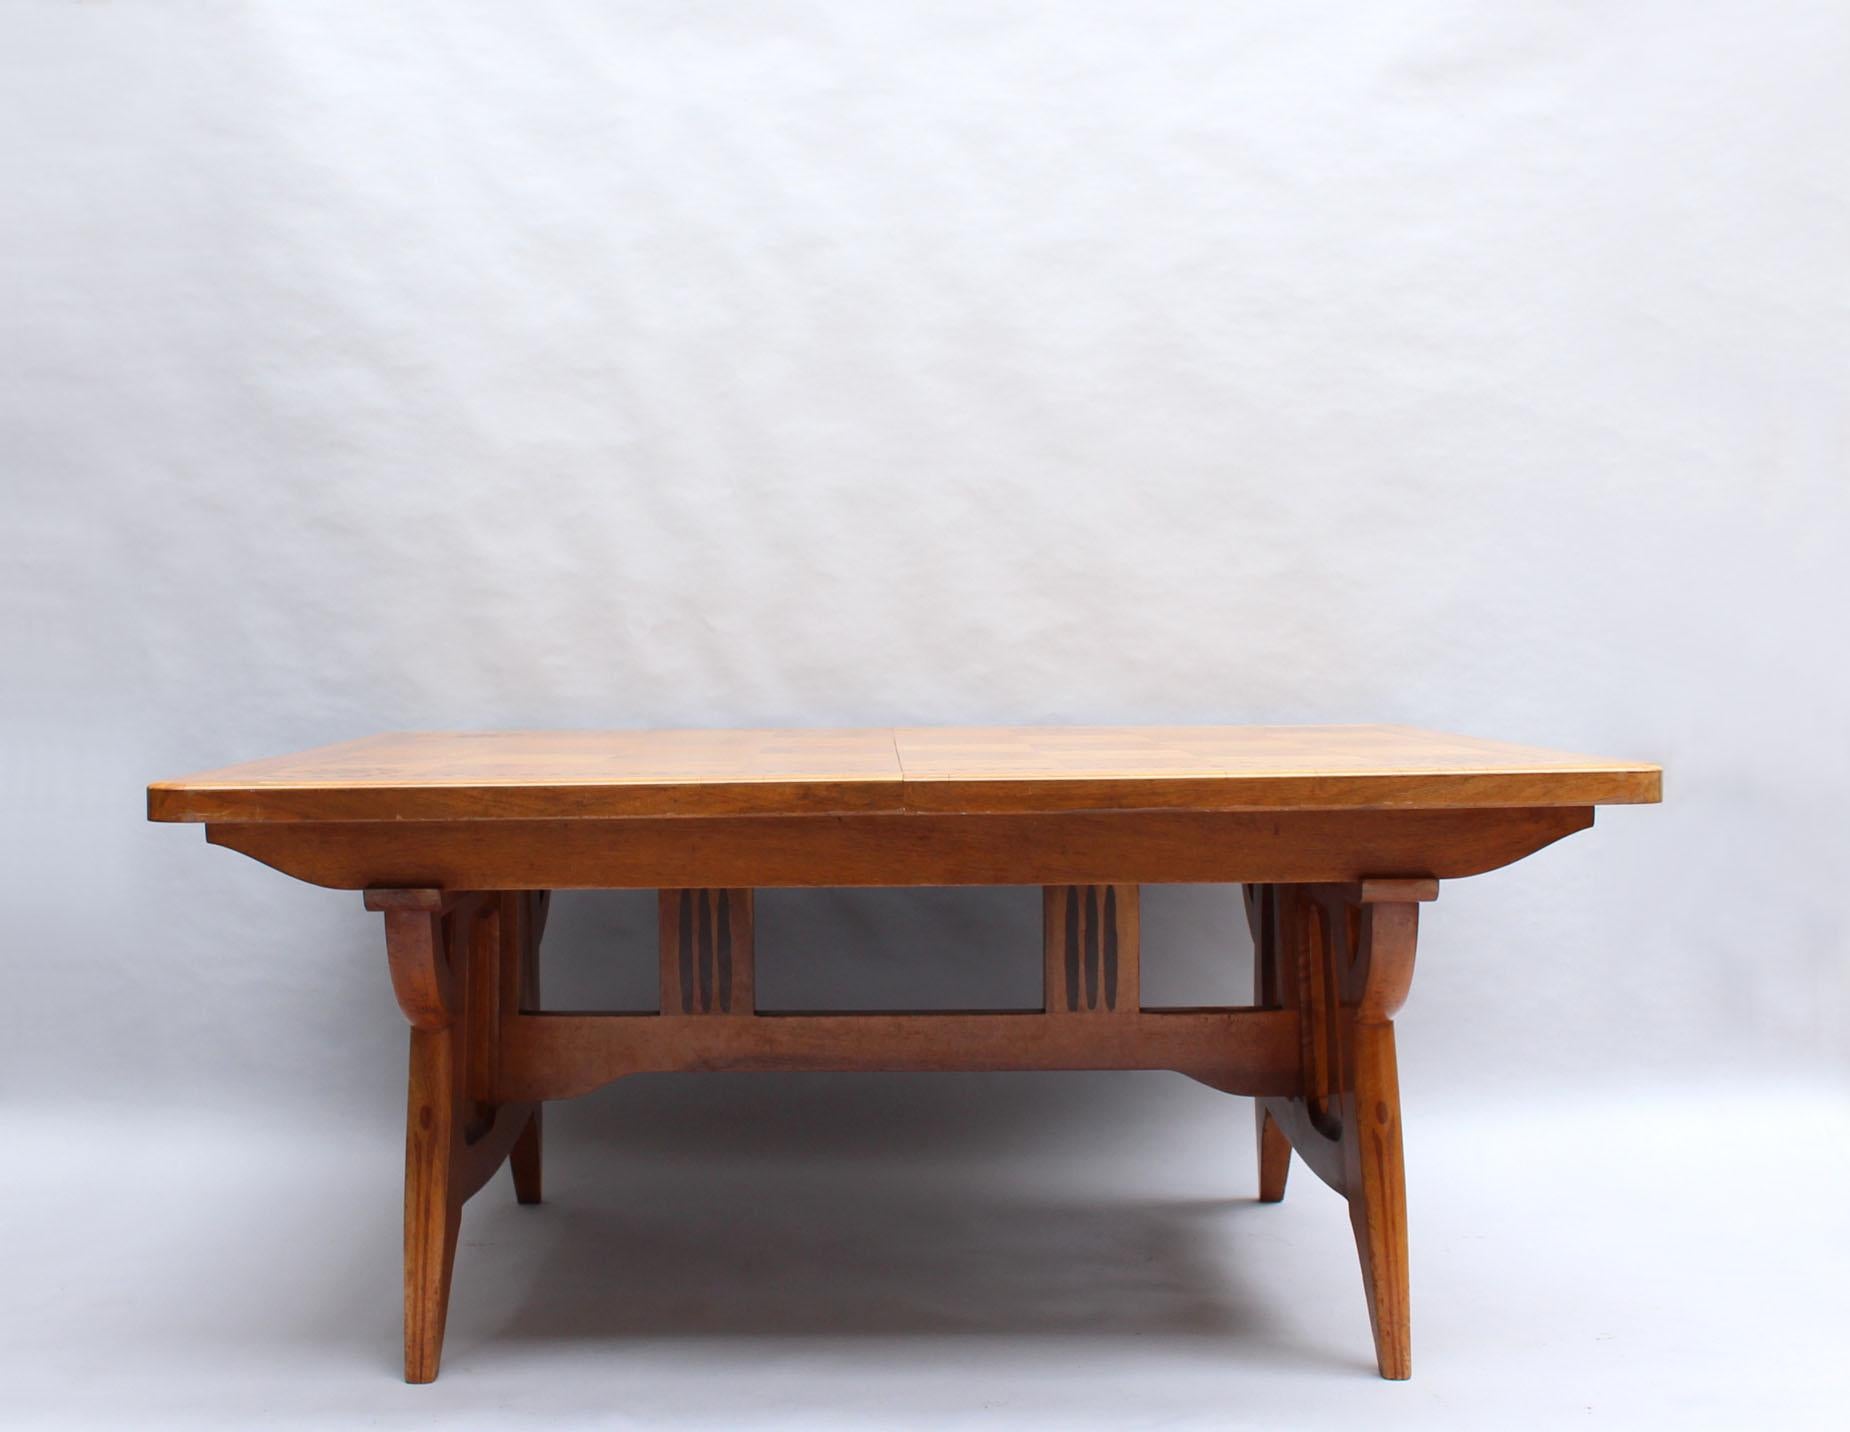 Paul HUILLARD (1875-1966) - Feiner französischer Esstisch aus Nussbaumholz mit exotischen geometrischen Intarsien, spätes Jugendstil und frühes Art Déco.
Der Tisch ist ausziehbar, was die Länge des Tisches verdoppeln würde, aber die Blätter